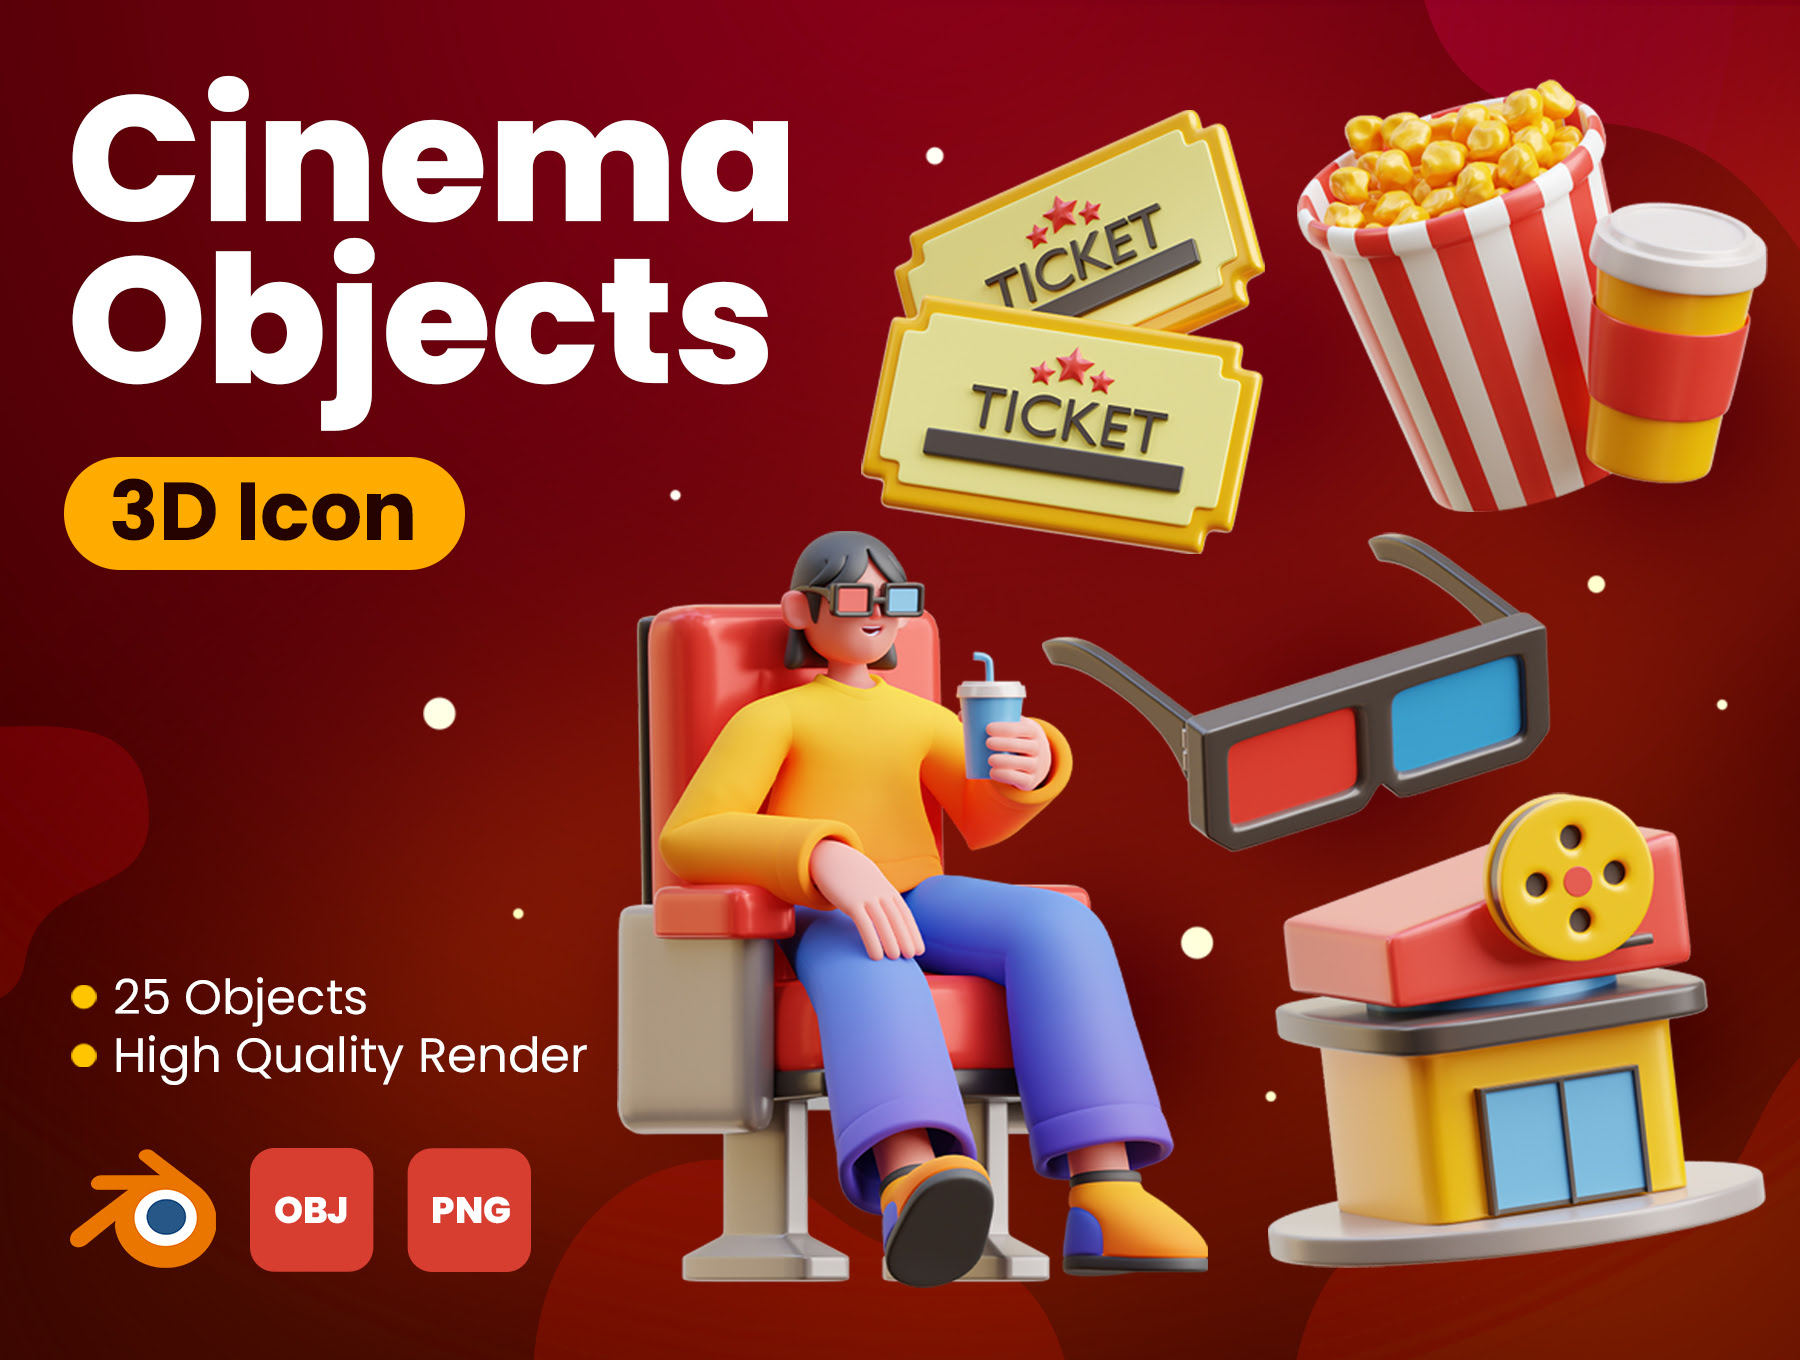 电影院3D图标 Cinema 3D Icons blender格式-插画-到位啦UI